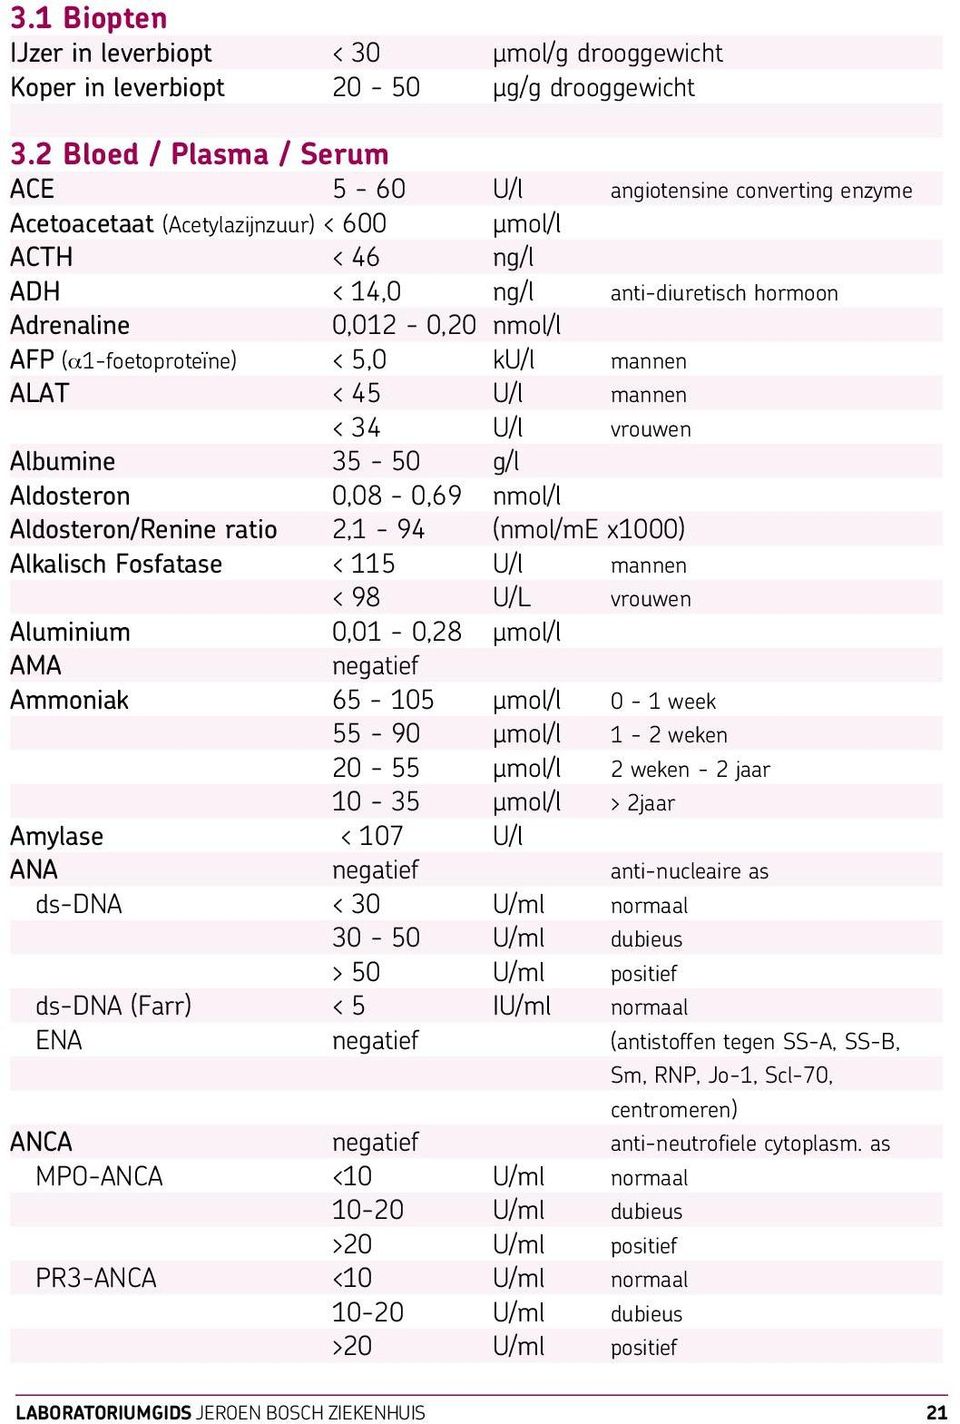 AFP (α1-foetoproteïne) < 5,0 ku/l mannen ALAT < 45 U/l mannen < 34 U/l vrouwen Albumine 35-50 g/l Aldosteron 0,08-0,69 nmol/l Aldosteron/Renine ratio 2,1-94 (nmol/me x1000) Alkalisch Fosfatase < 115